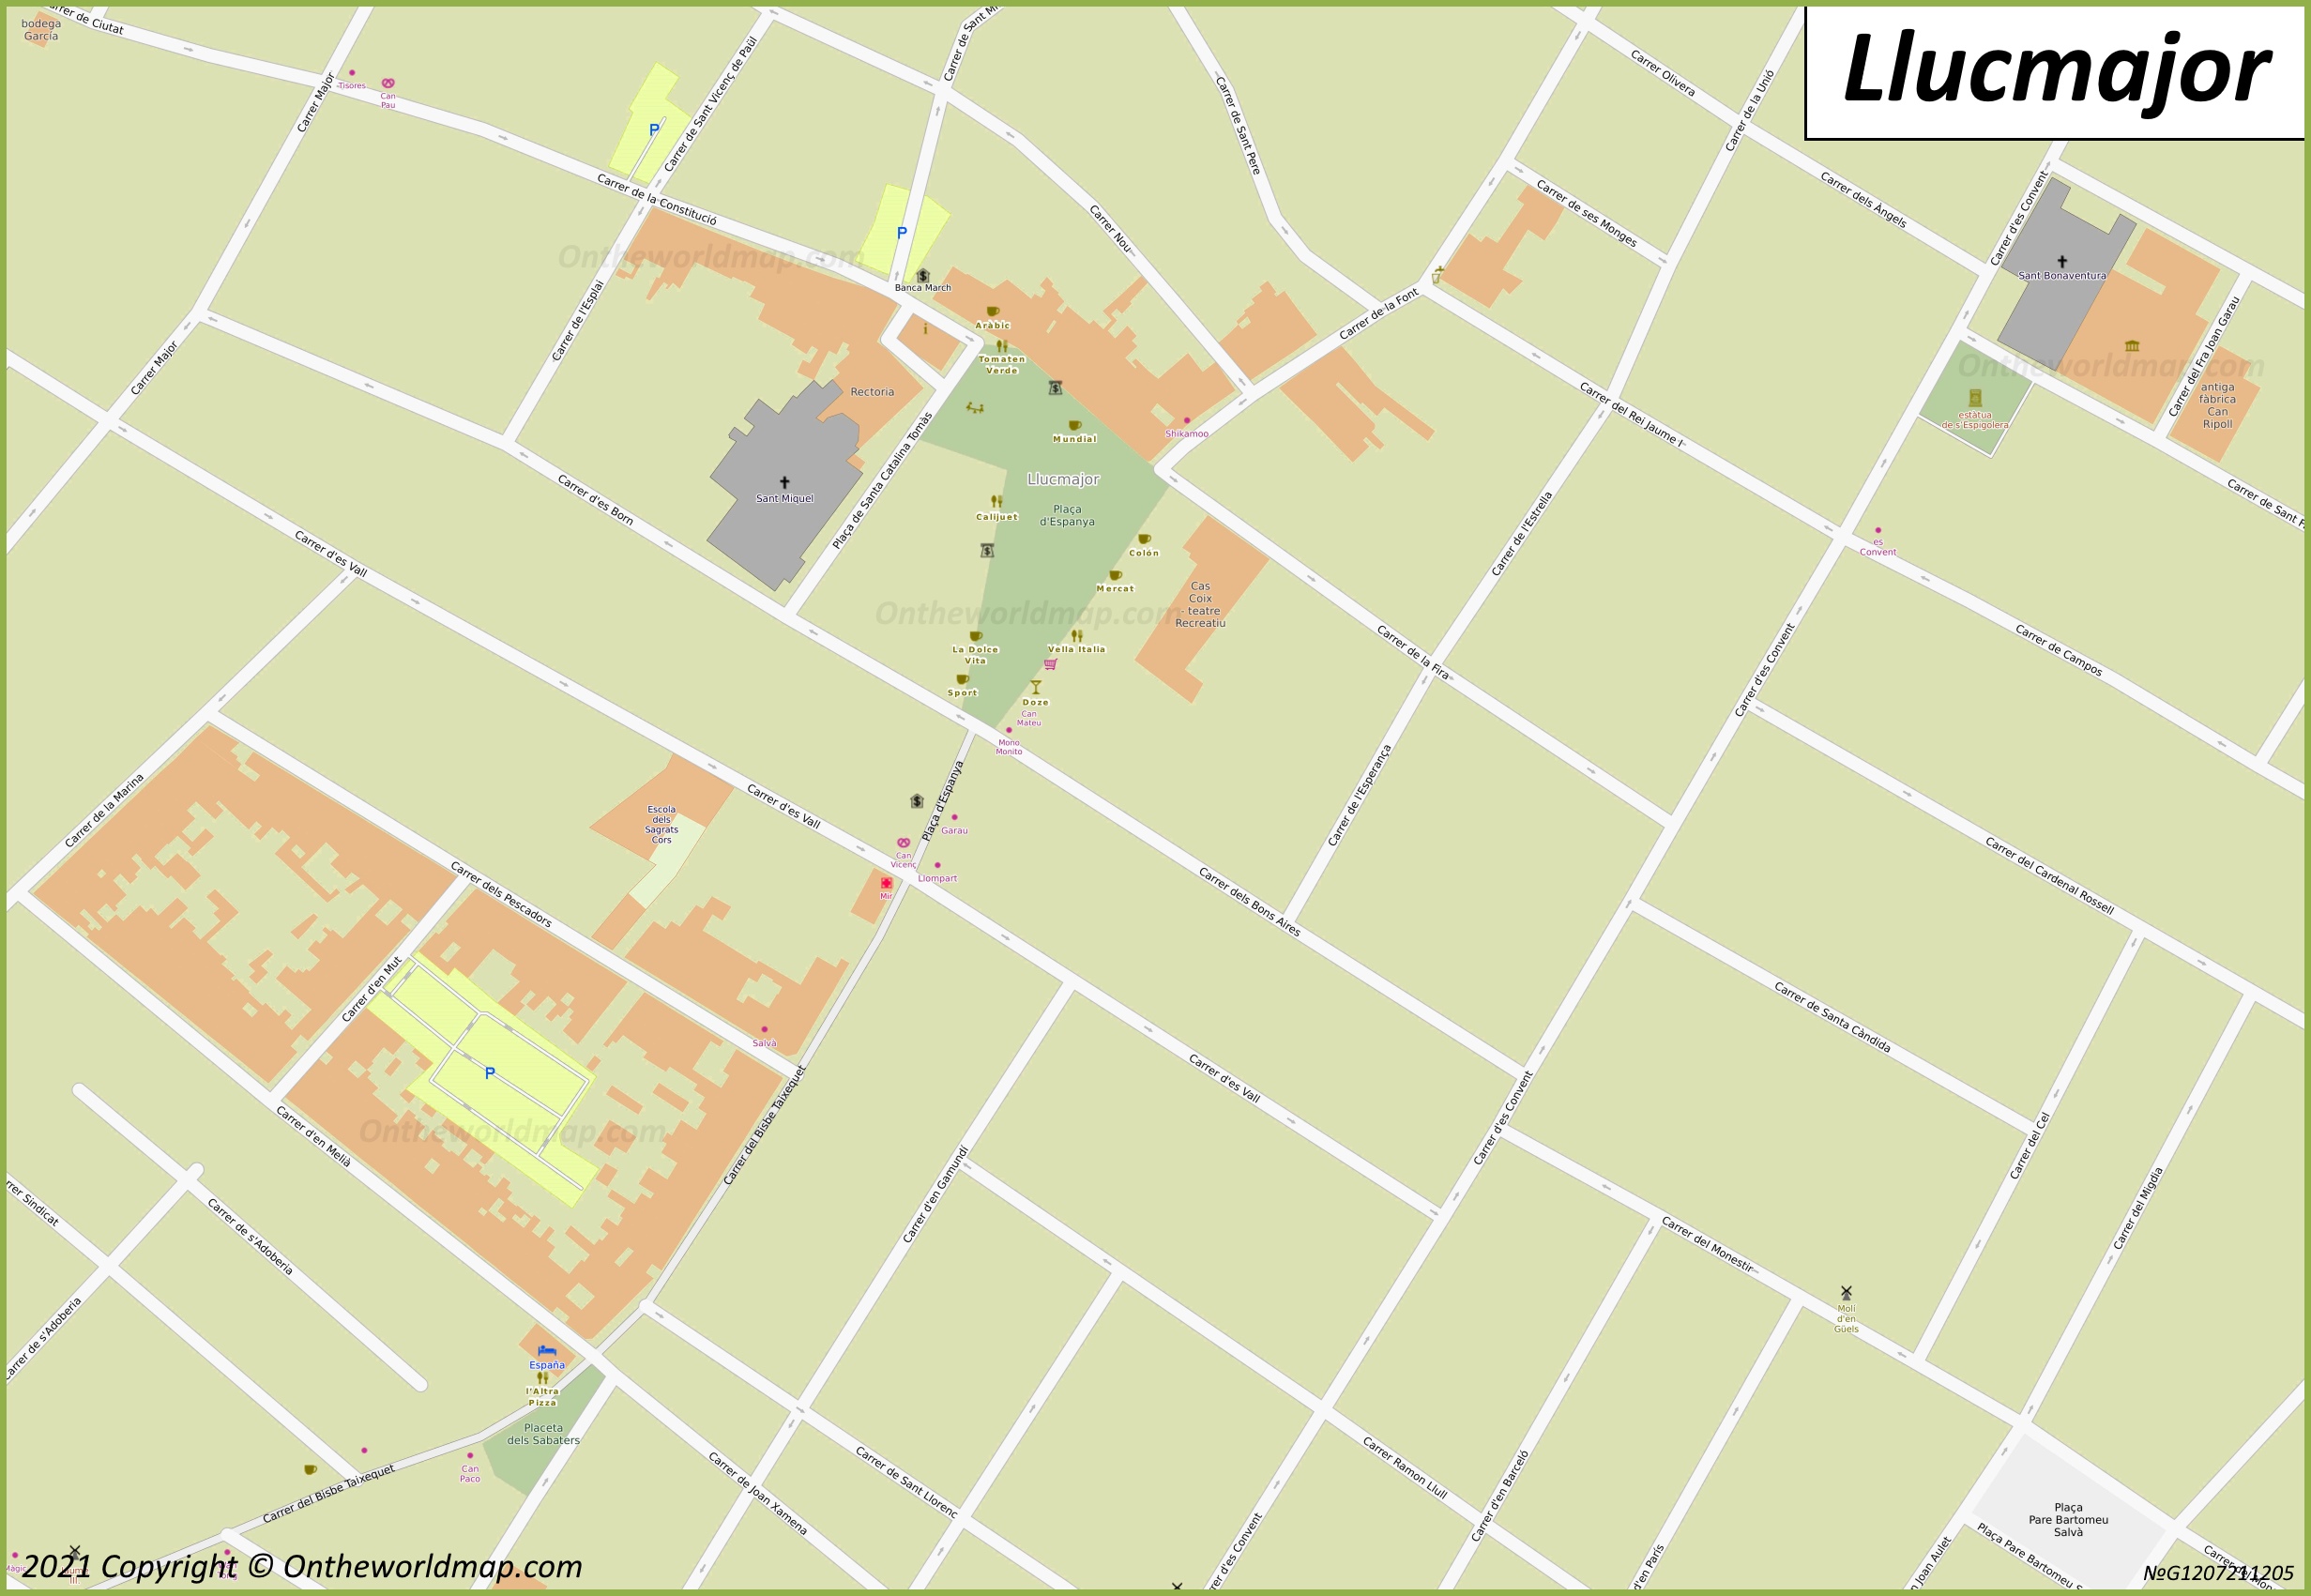 Lluchmayor - Mapa de la Ciudad Vieja